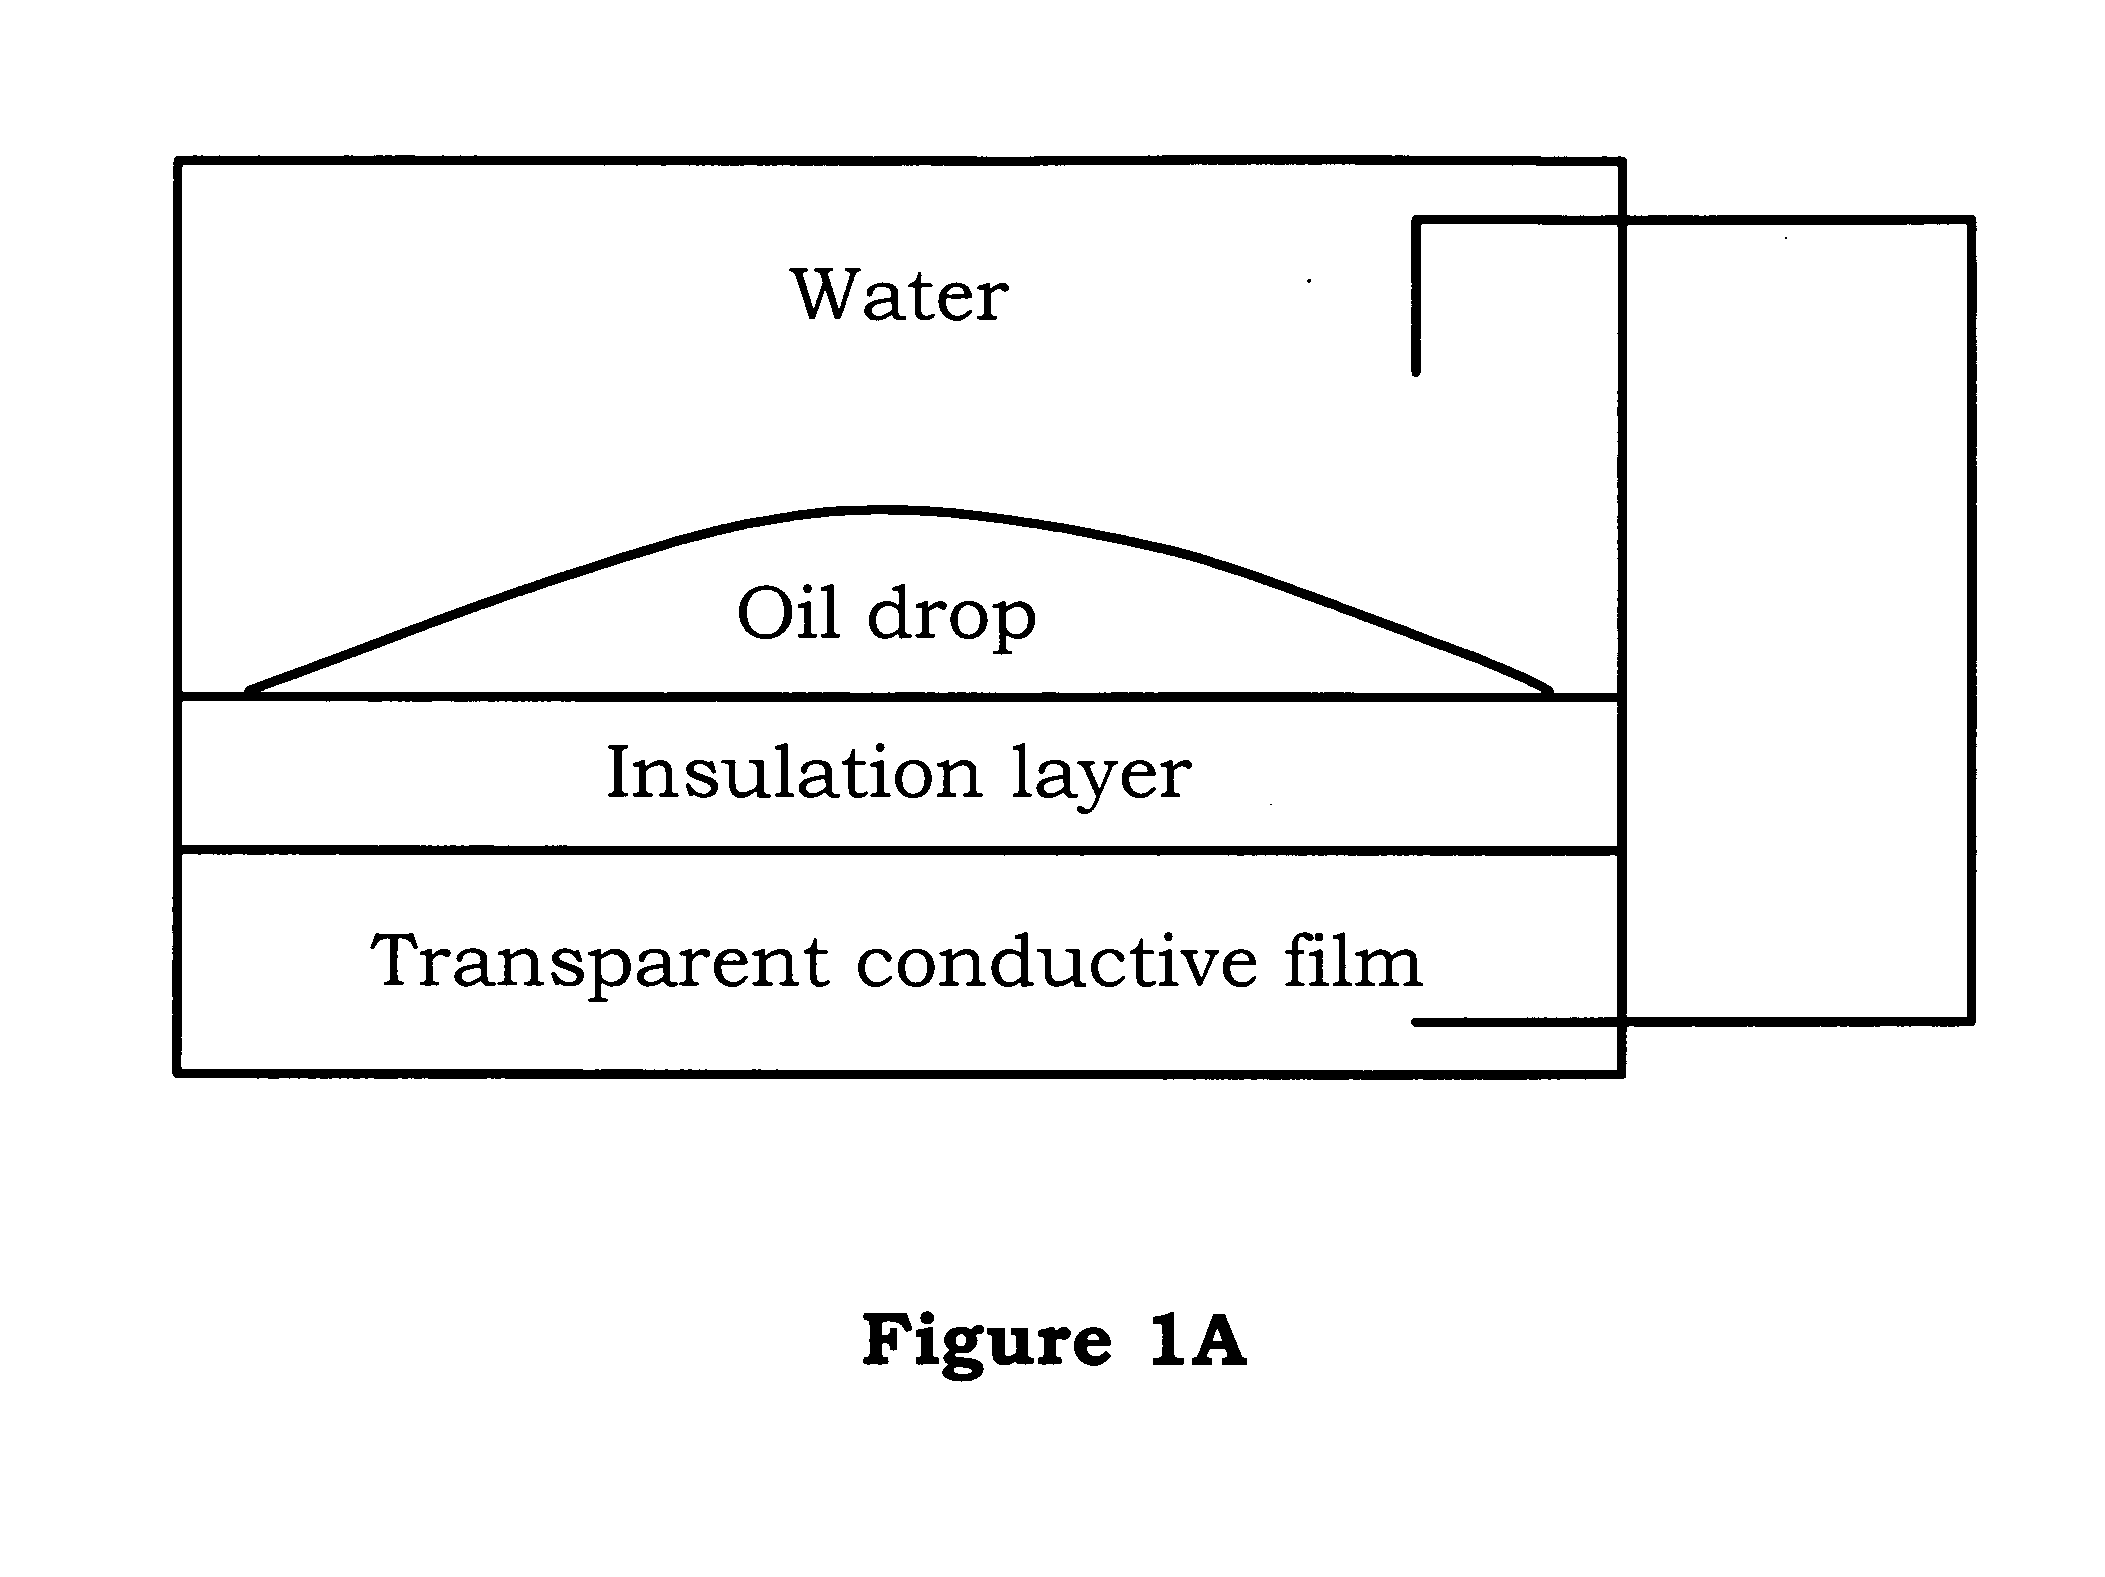 Electrical control light valve apparatus having liquid metal